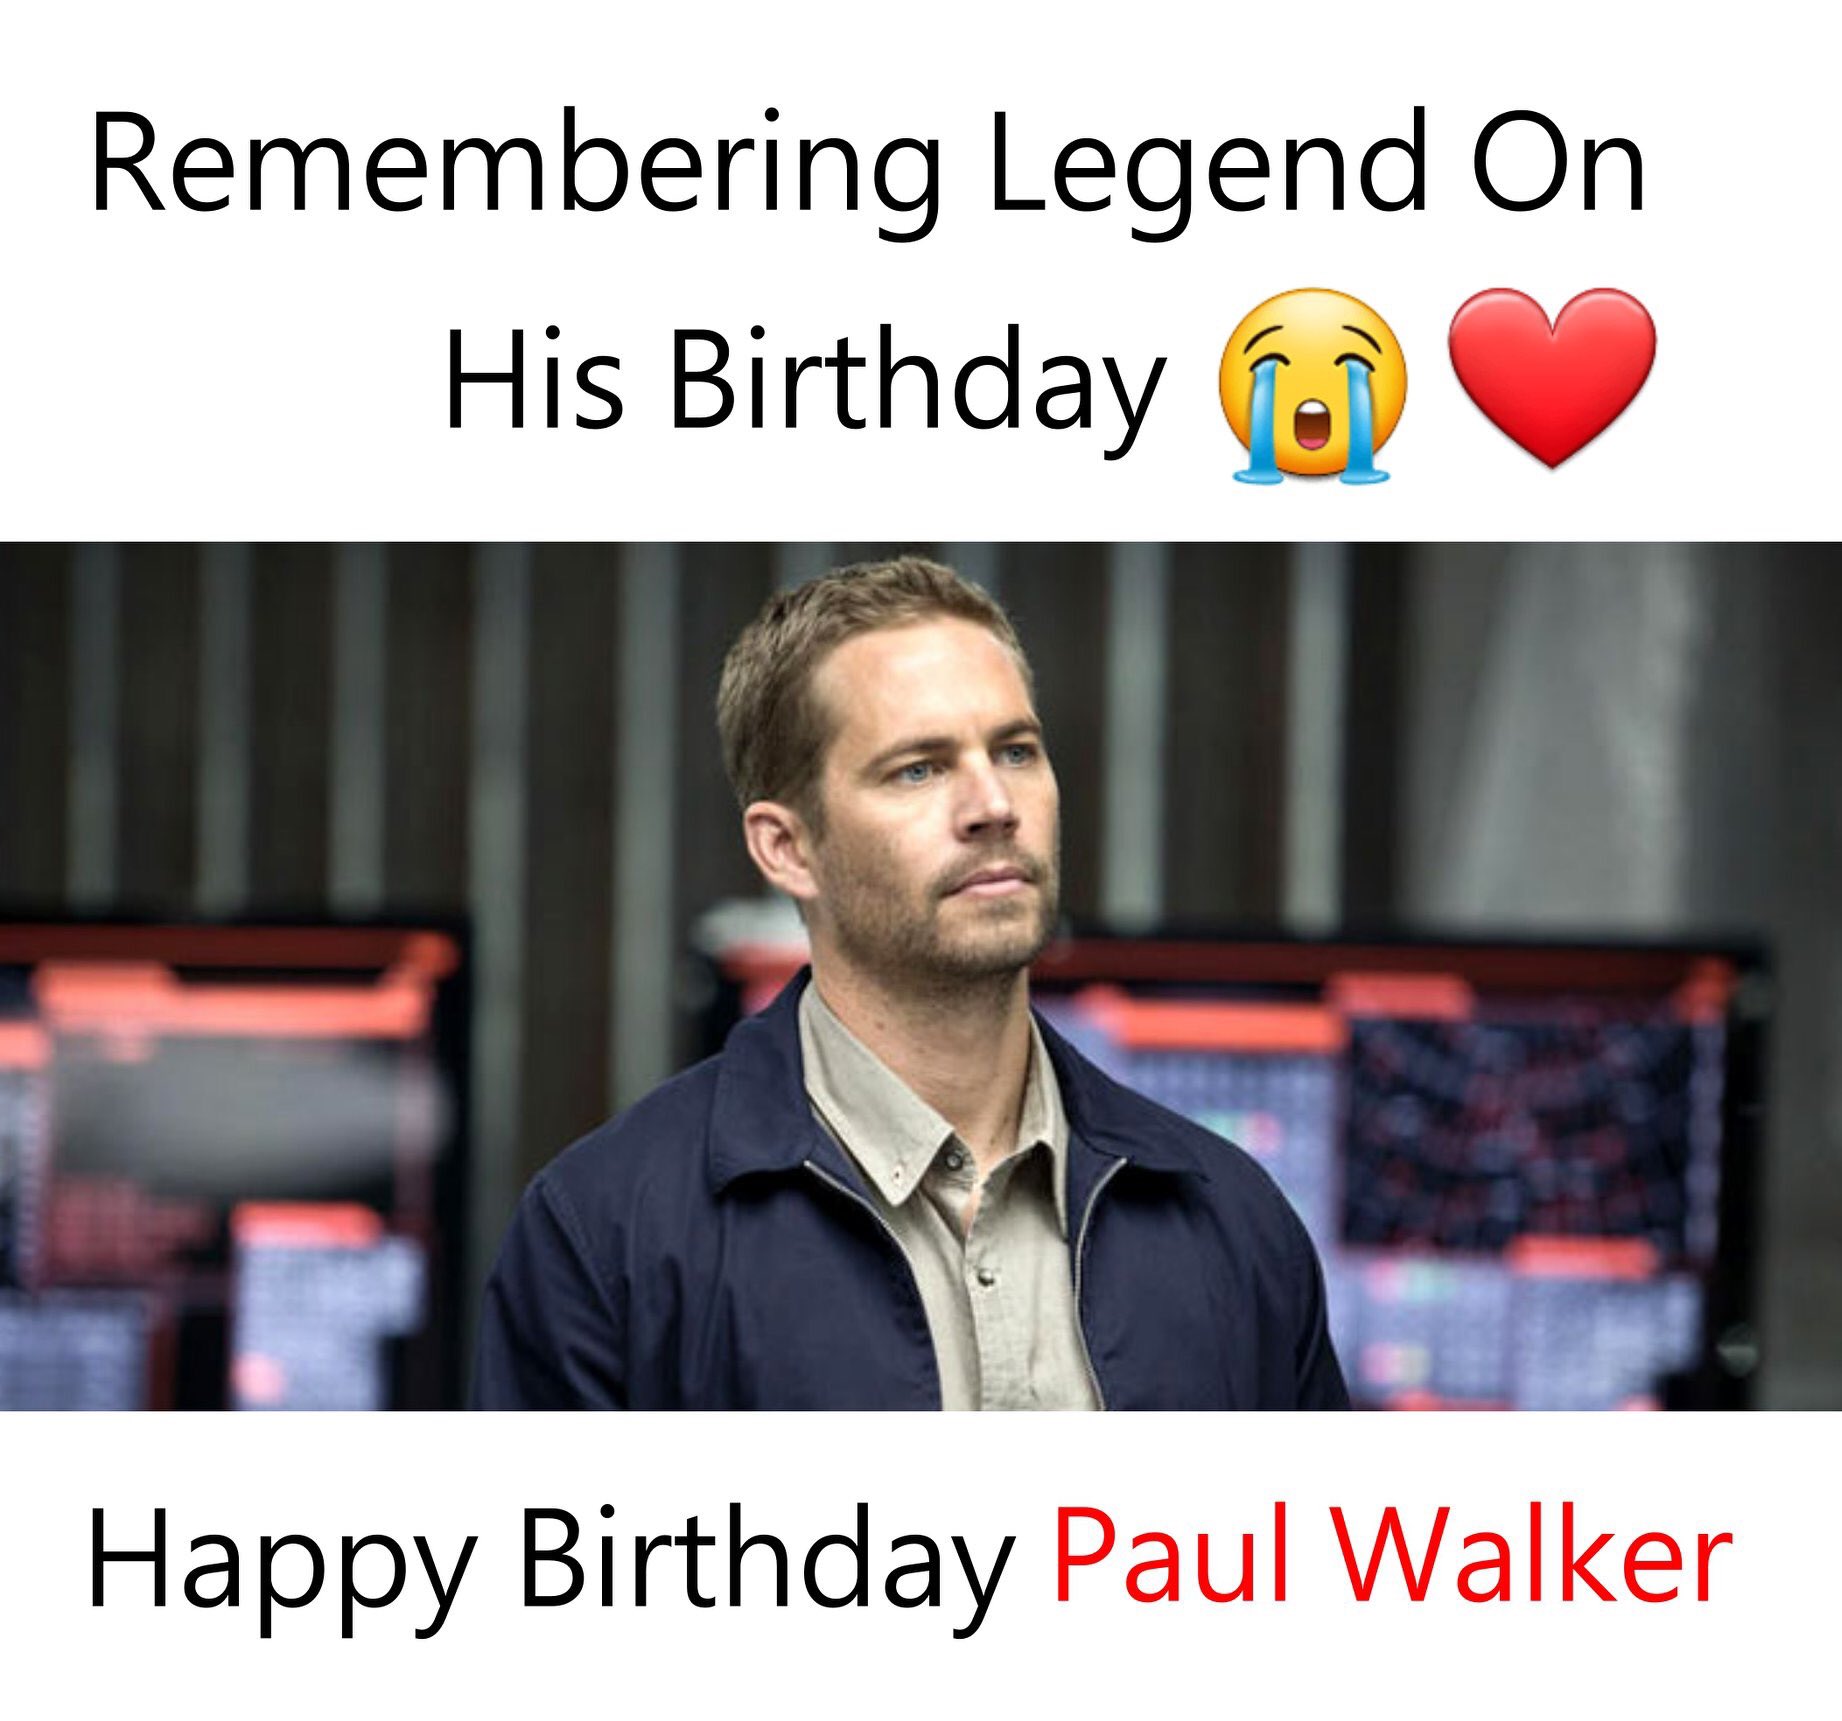 Happy Birthday, Paul Walker! We Miss You 